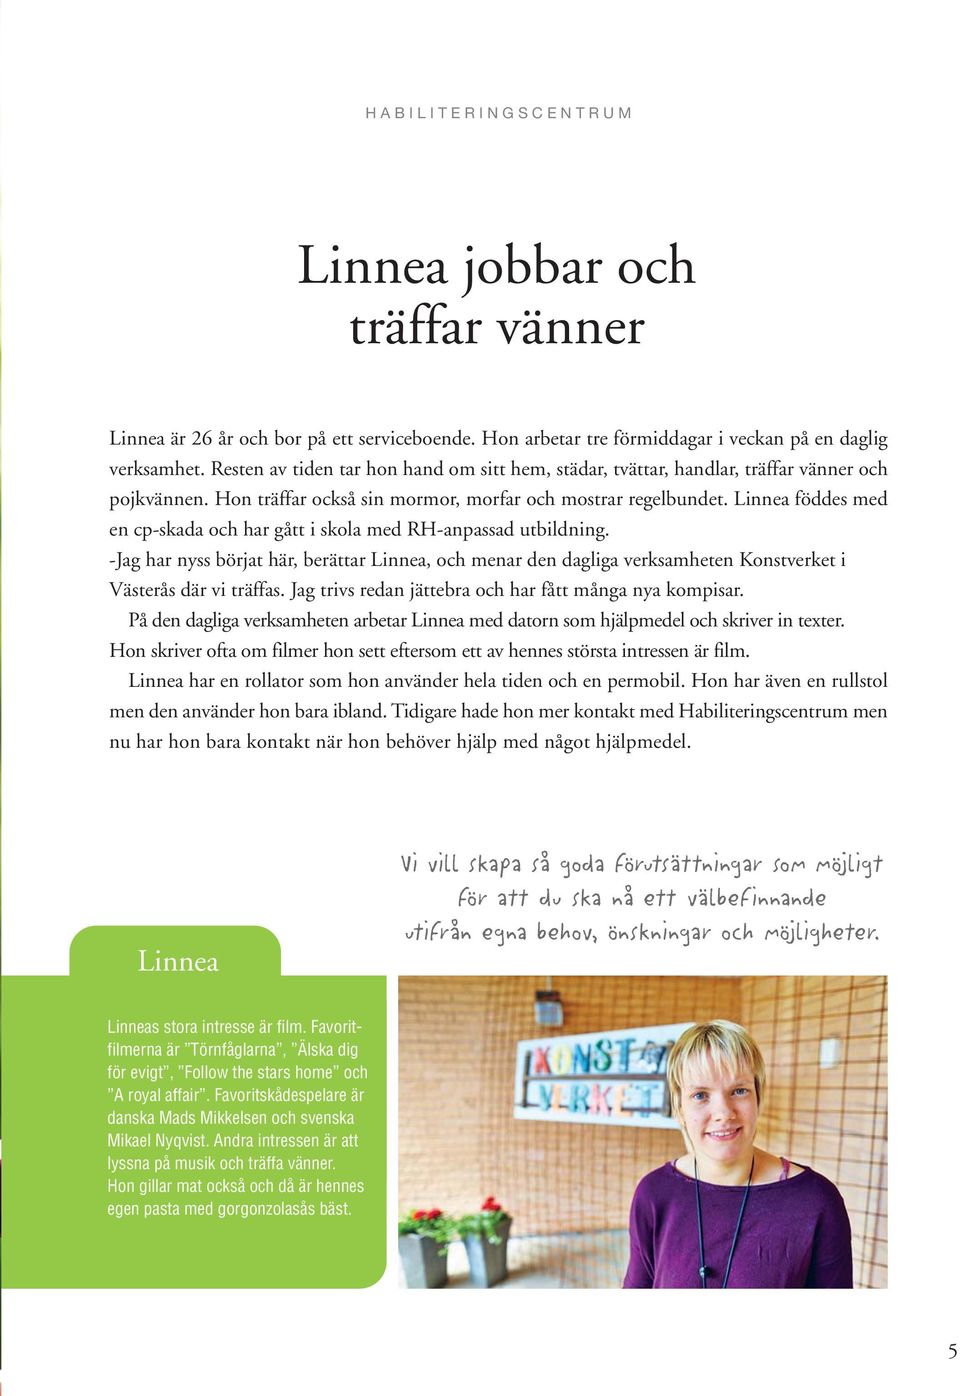 Linnea föddes med en cp-skada och har gått i skola med RH-anpassad utbildning. -Jag har nyss börjat här, berättar Linnea, och menar den dagliga verksamheten Konstverket i Västerås där vi träffas.